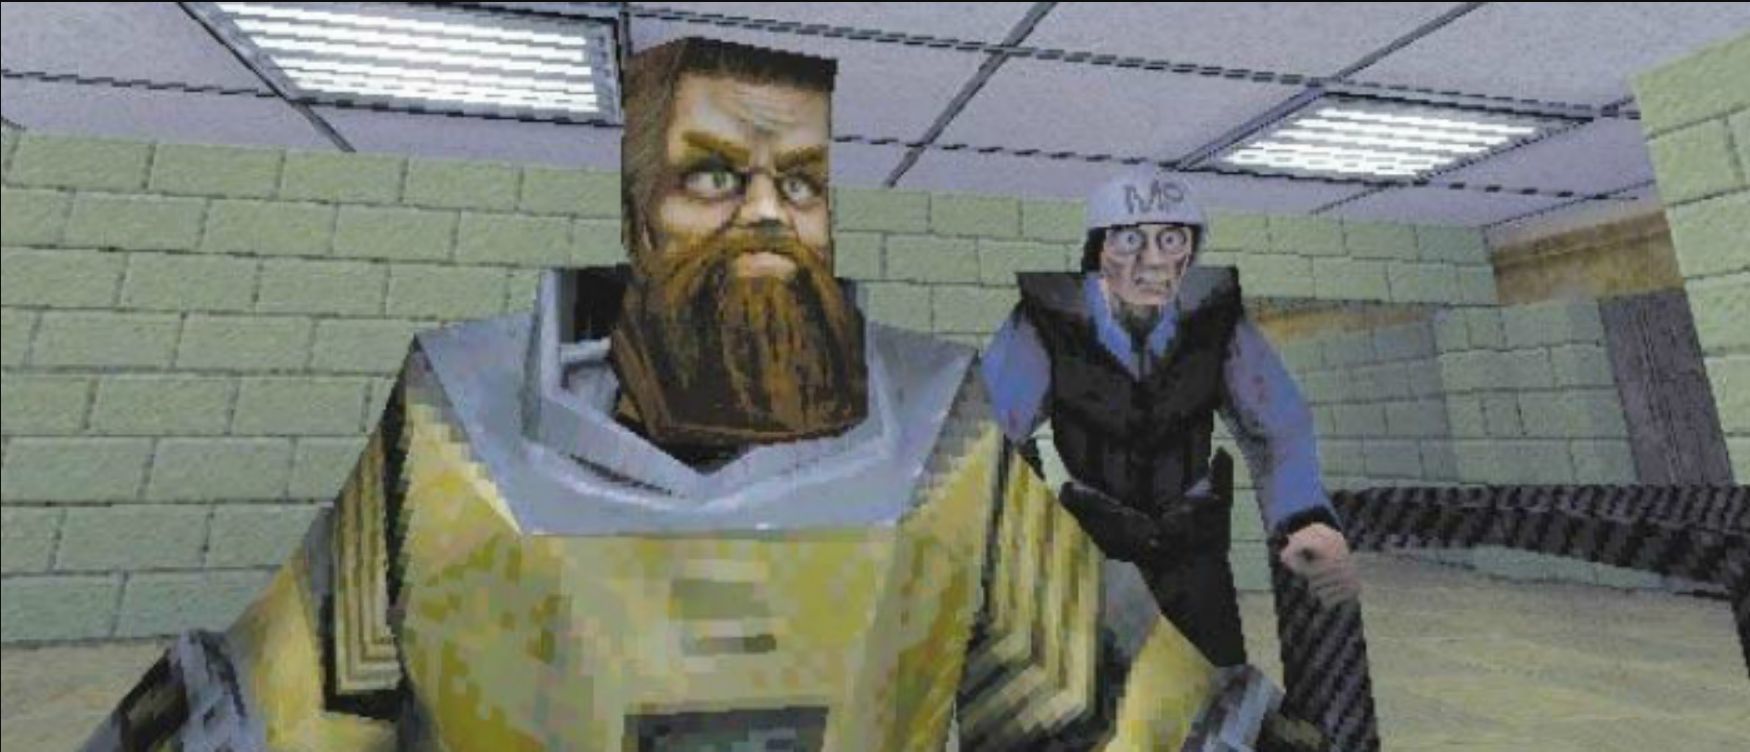 Half-Life, которой не было — история разработки культового шутера, перевернувшего индустрию